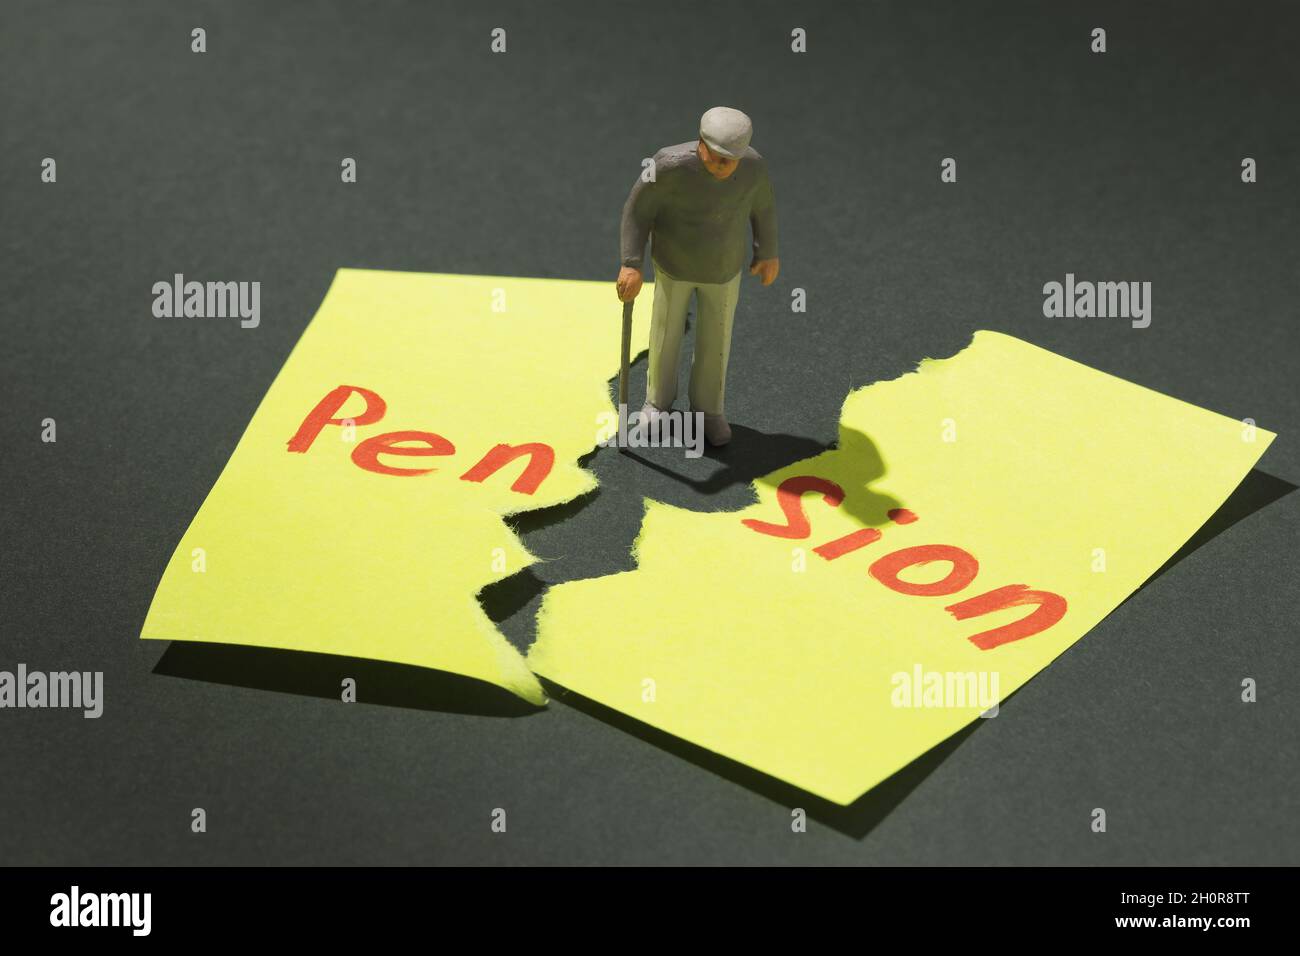 Uomo anziano con una crutch e un foglio strappato di carta con testo, concetto sul tema della non pensione in vecchiaia, giocattolo di plastica a forma di uomo Foto Stock